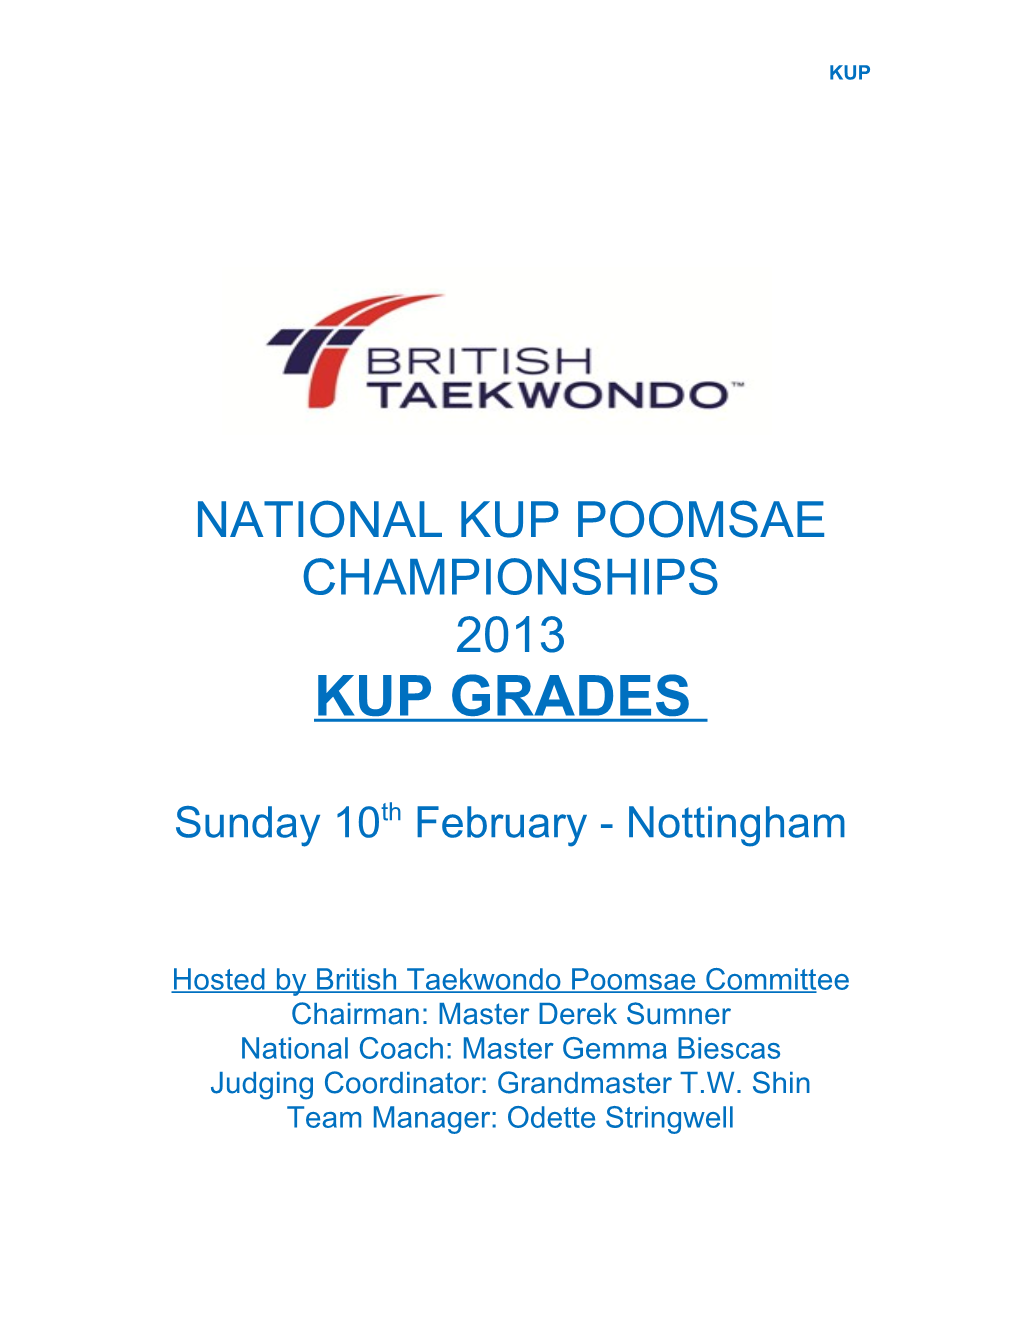 National Kup Poomsae Championships